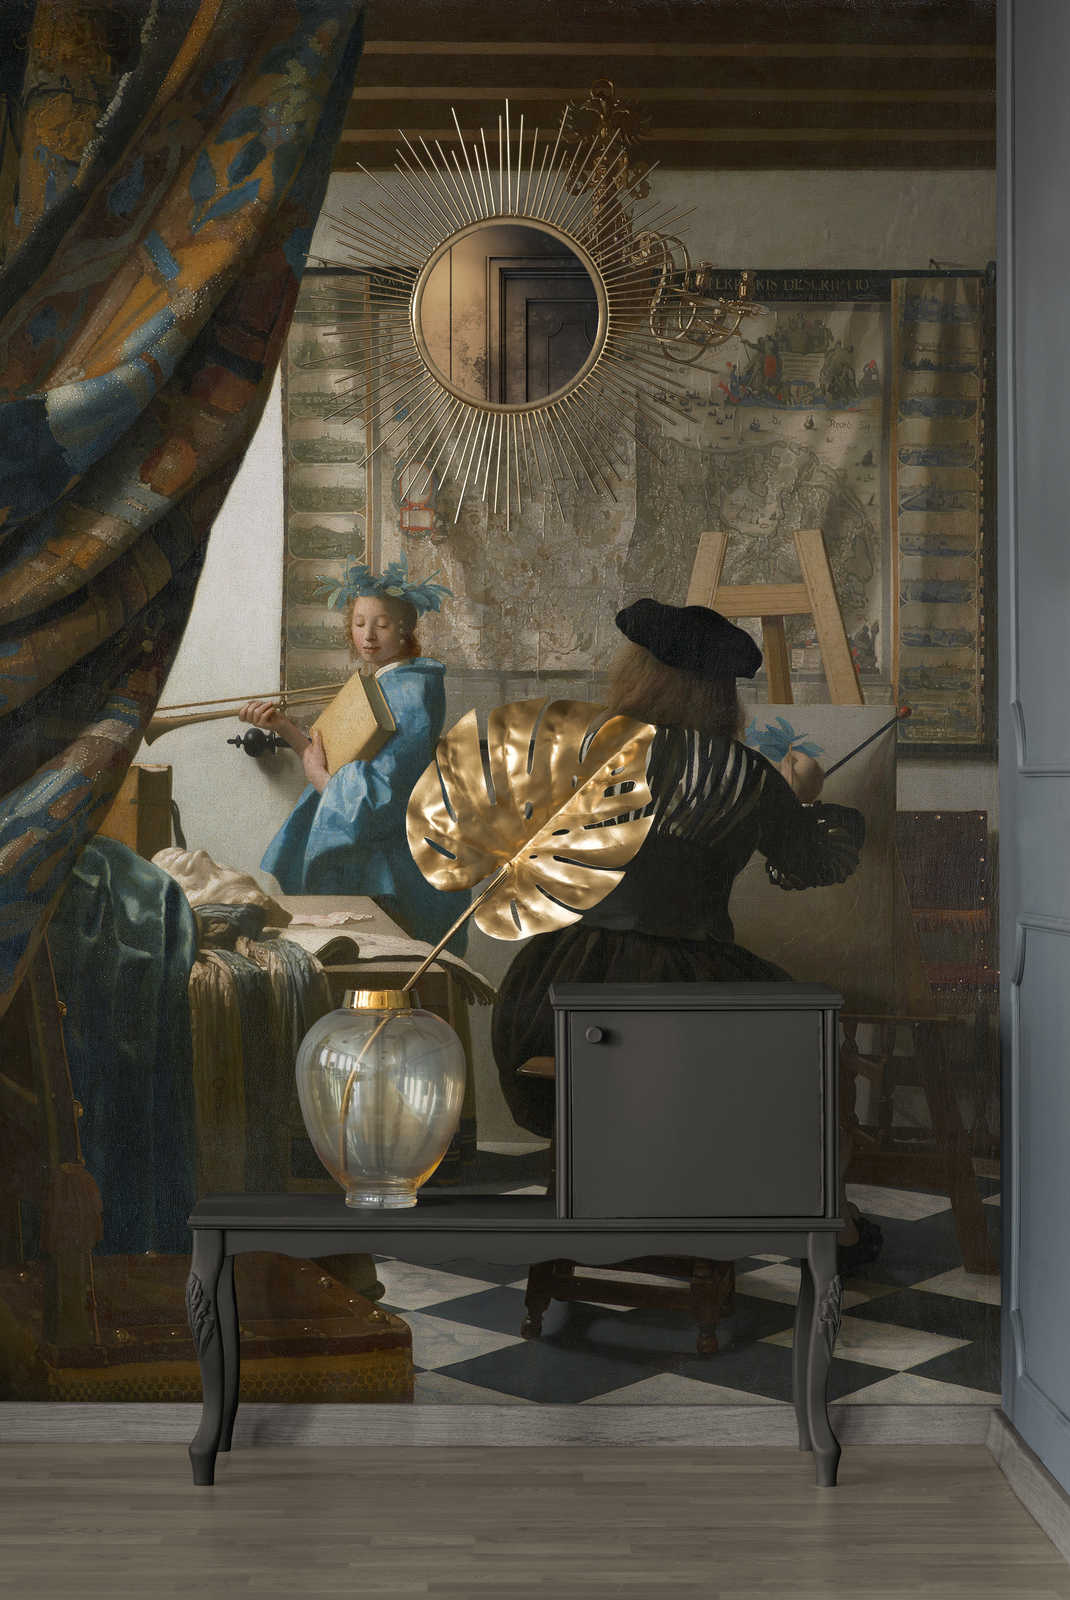             Photo wallpaper "Vermeer in his studio" by Jan Vermeer
        